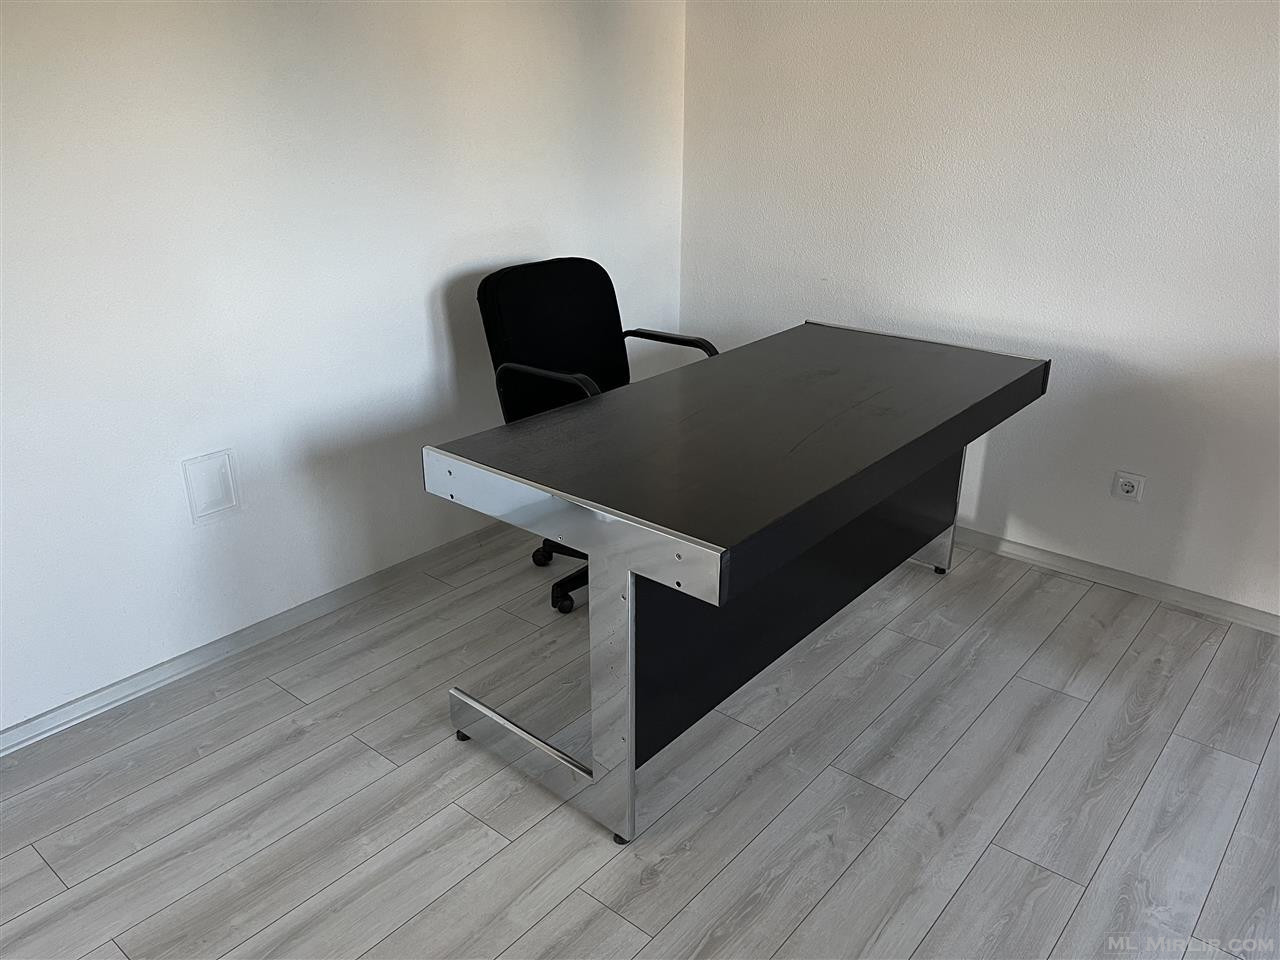 Tavolinë Pune - Për Zyre, laptop, kompjuter etj.